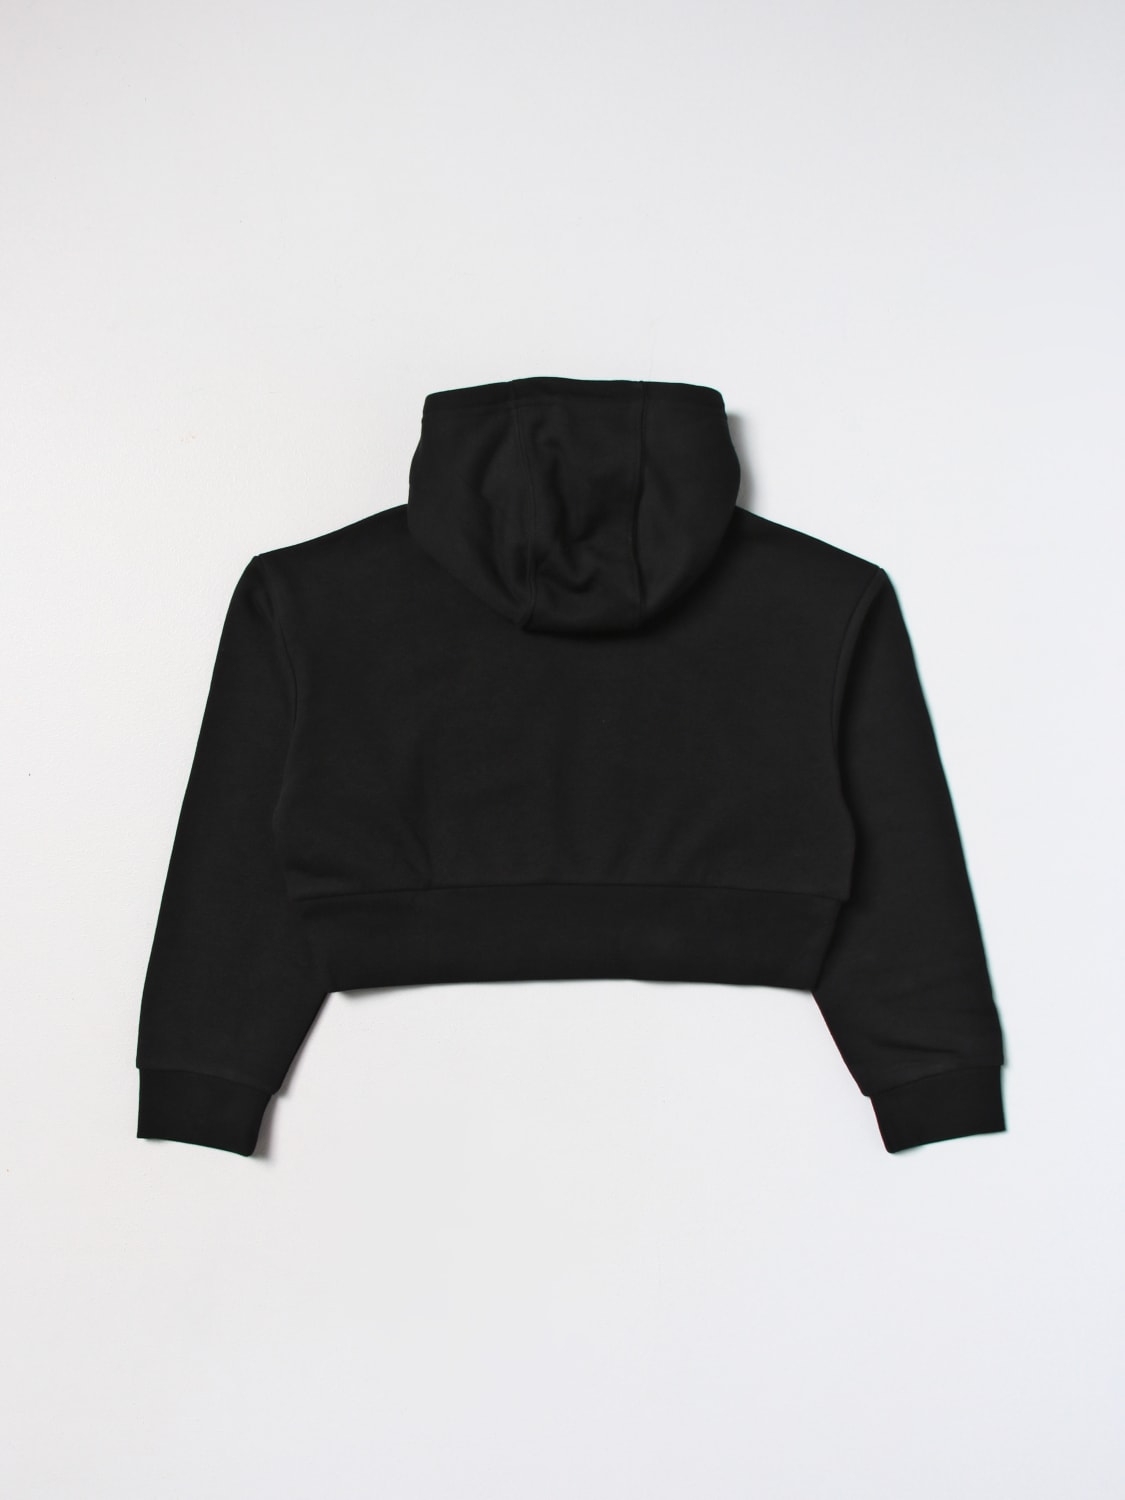 ADIDAS ORIGINALS: sweatshirt in cotton blend - Black | Adidas Originals  sweater IJ9719 online at